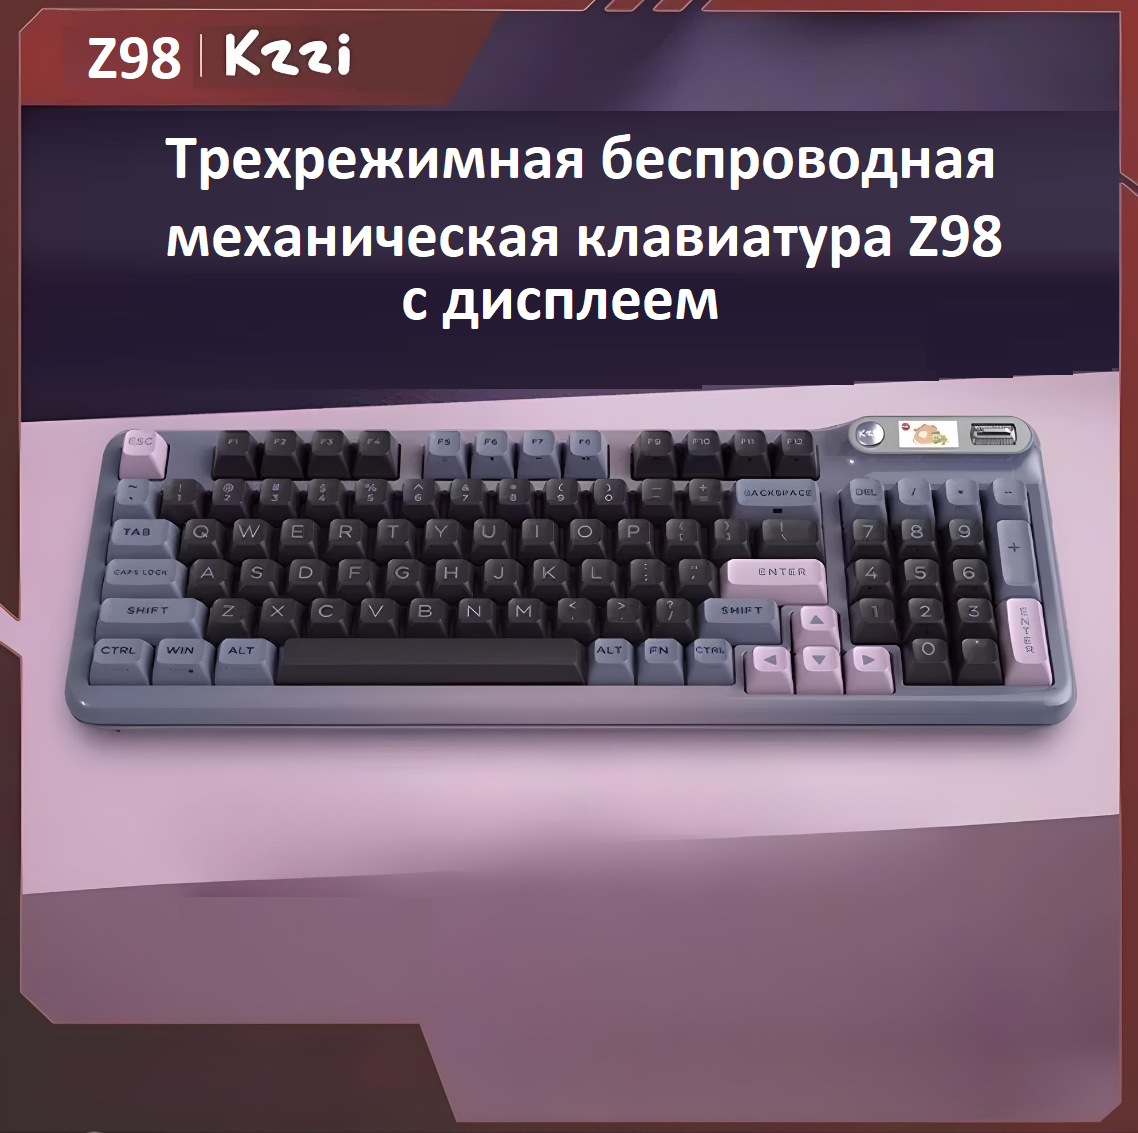 Ослепительная беспроводная механическая клавиатура Kzzi Z98, трехрежимная: проводная + 2.4G + BT, дисплей, Английская раскладка, фиолетовый